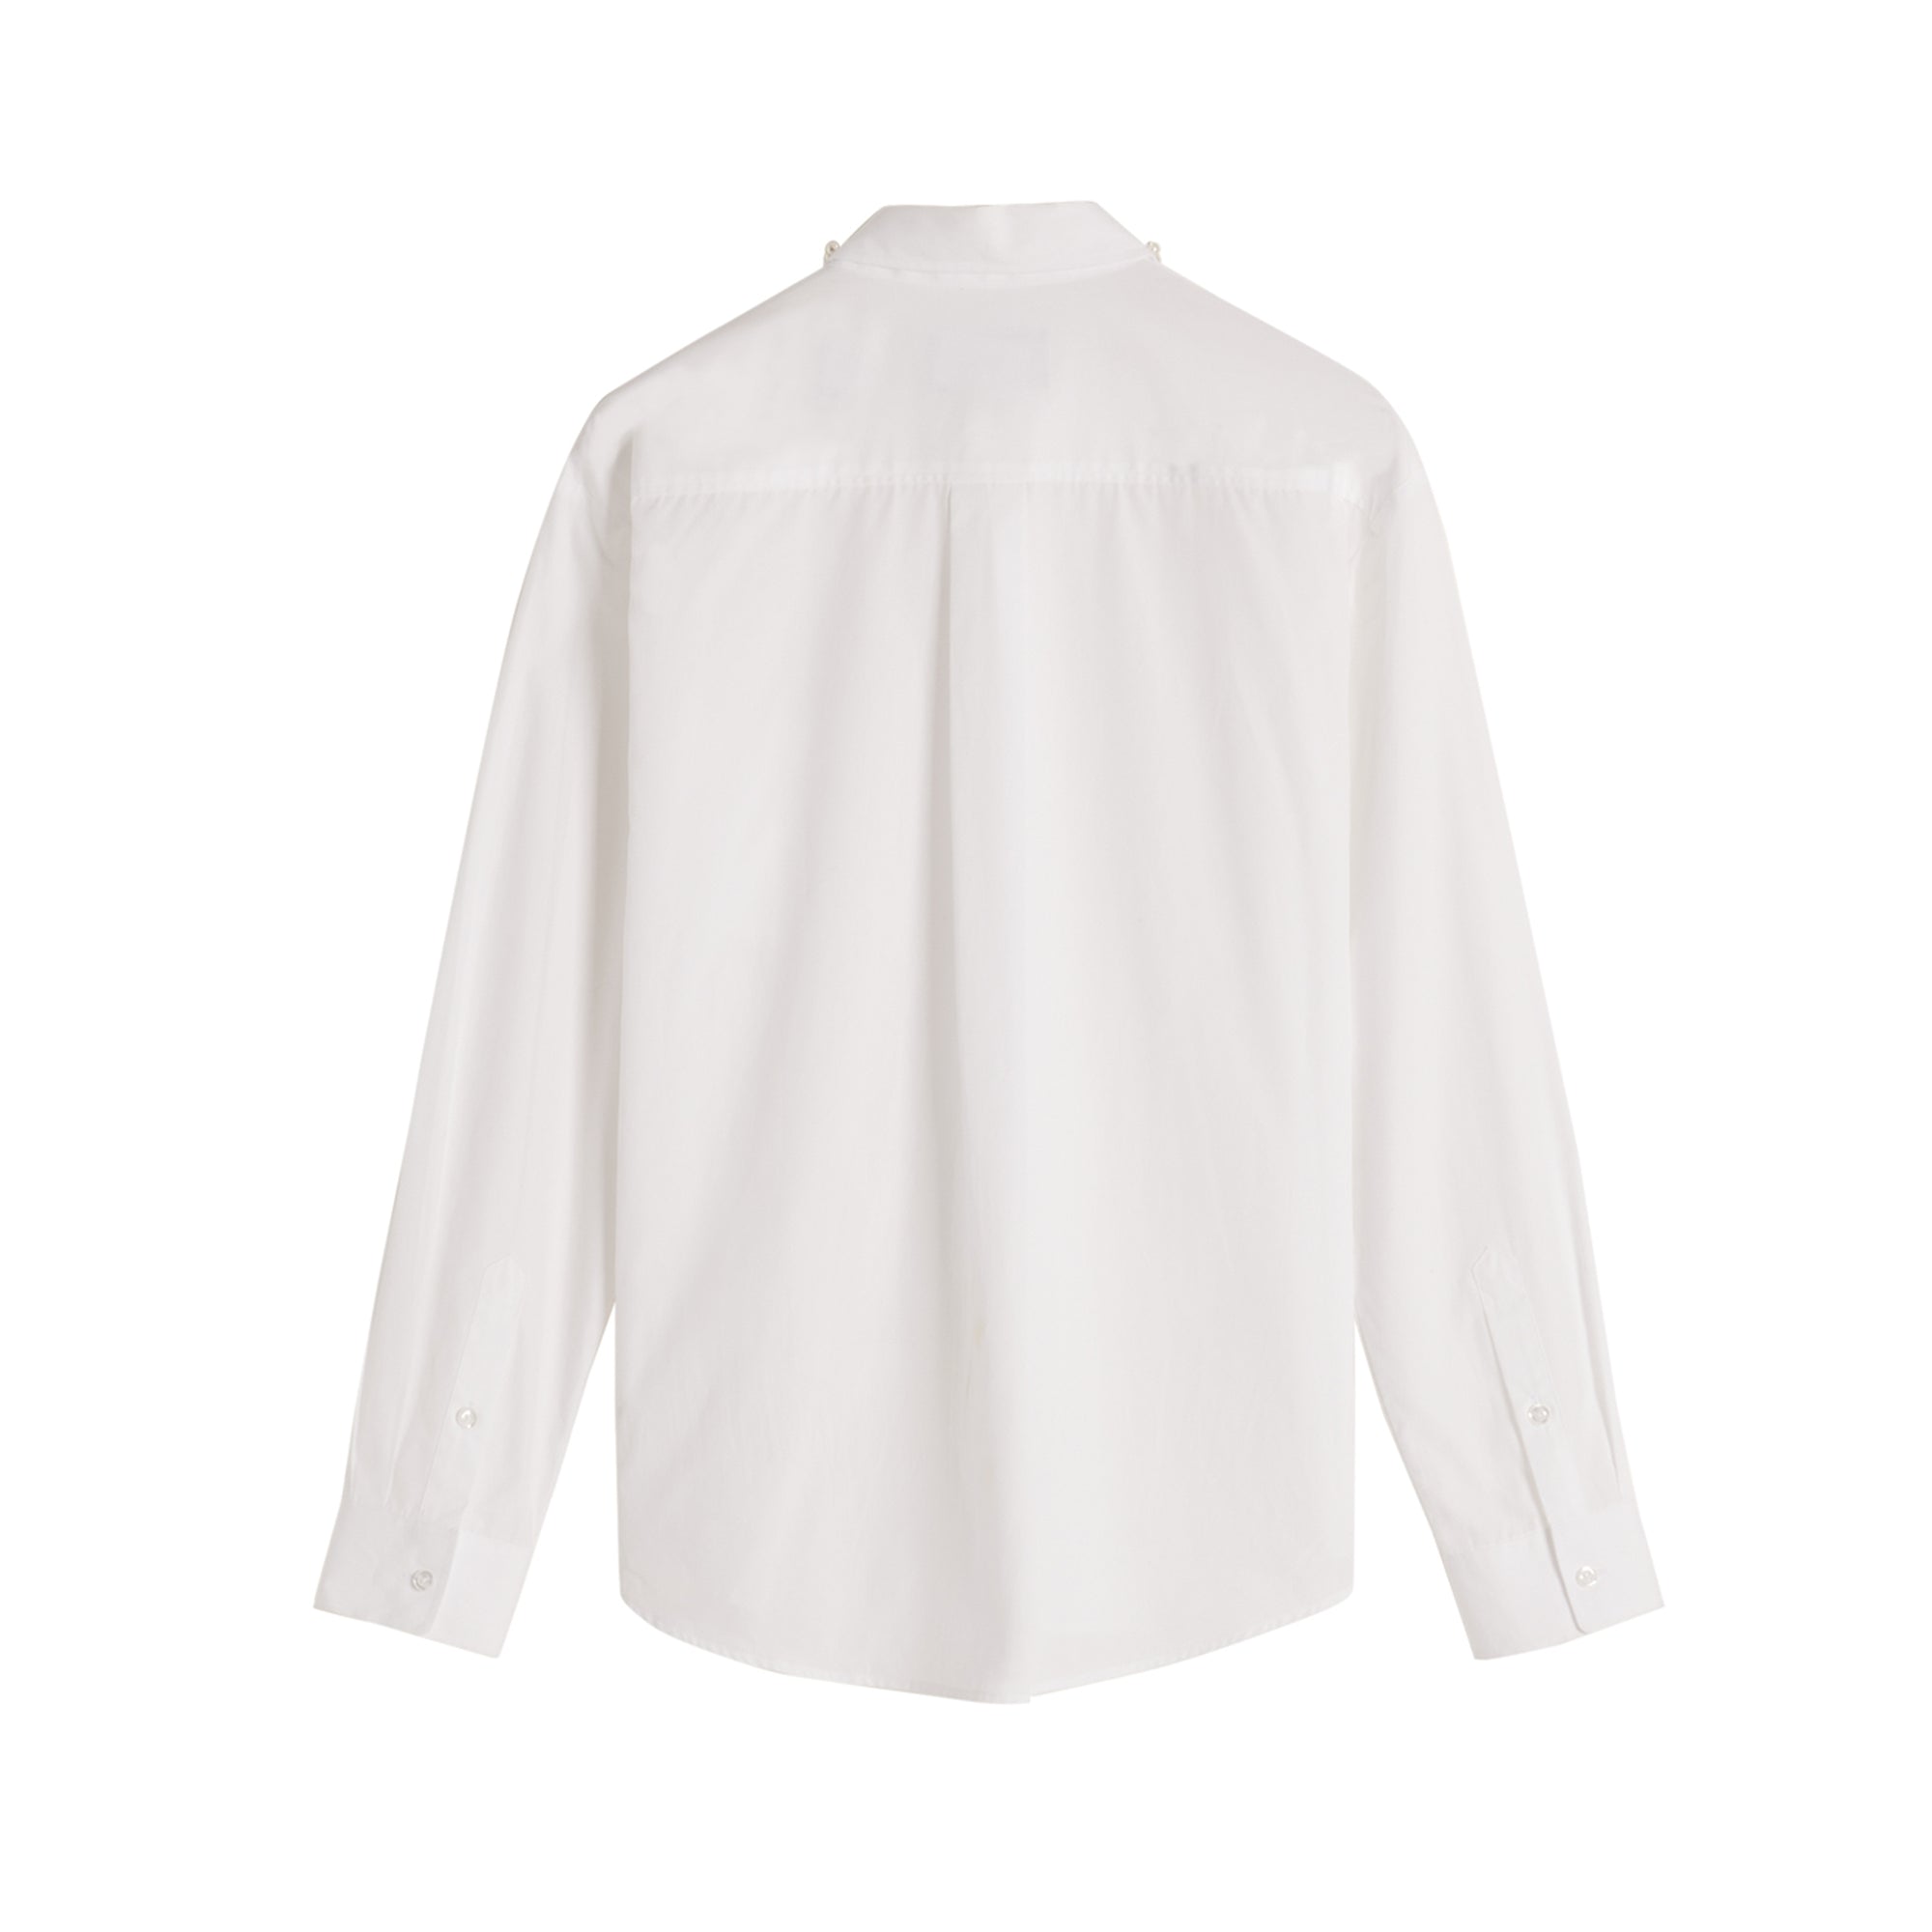 Simone Rocha - Men's Shirt - (White) view 2